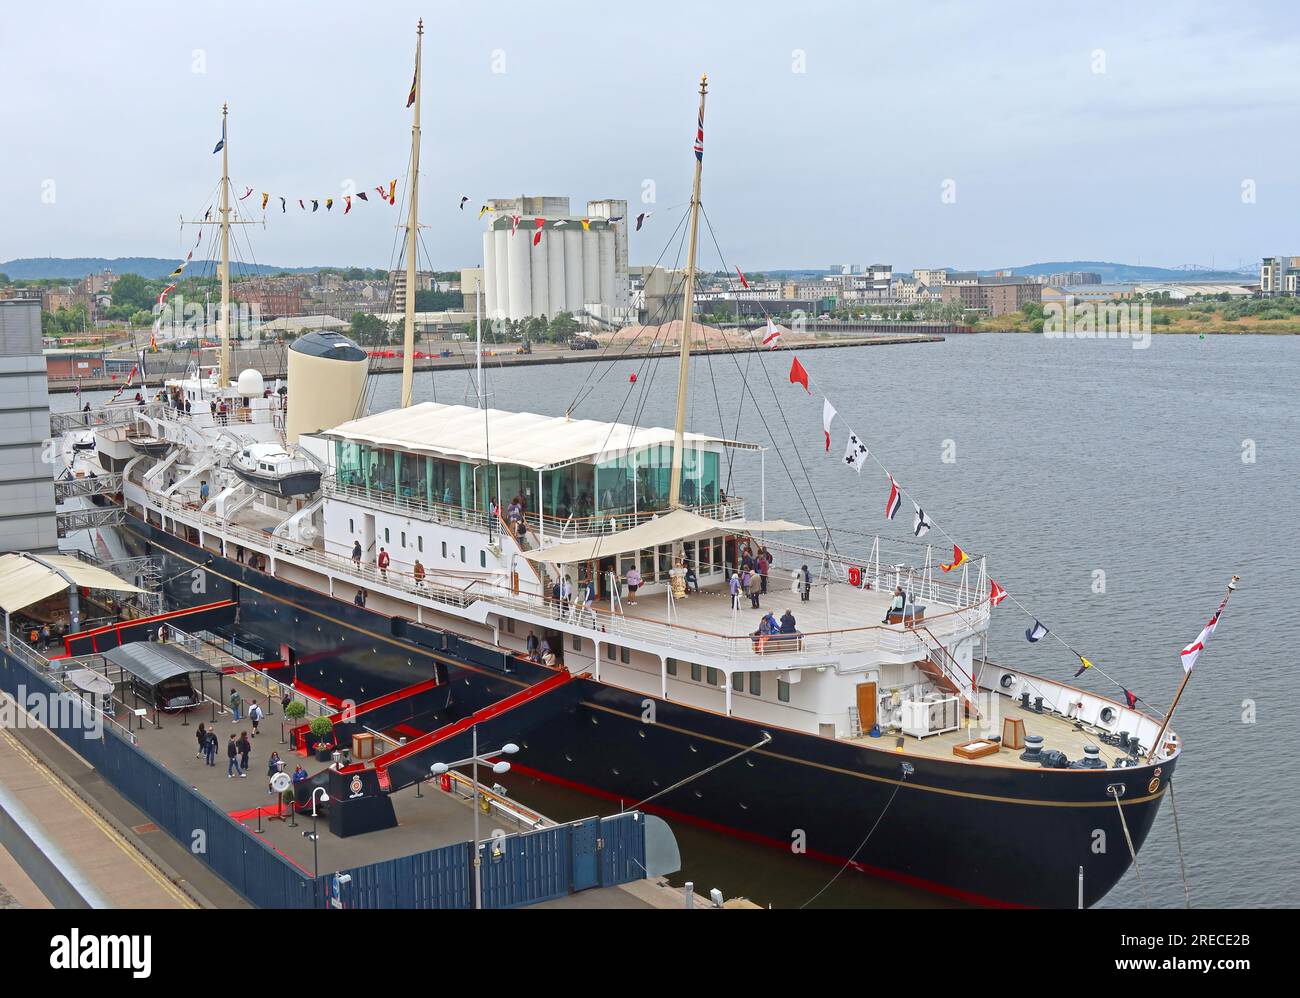 Royal Yacht Britannia, attraction touristique, amarré à Ocean terminal, Leith docks, Édimbourg, Lothian, Écosse, ROYAUME-UNI, EH6 6JJ Banque D'Images